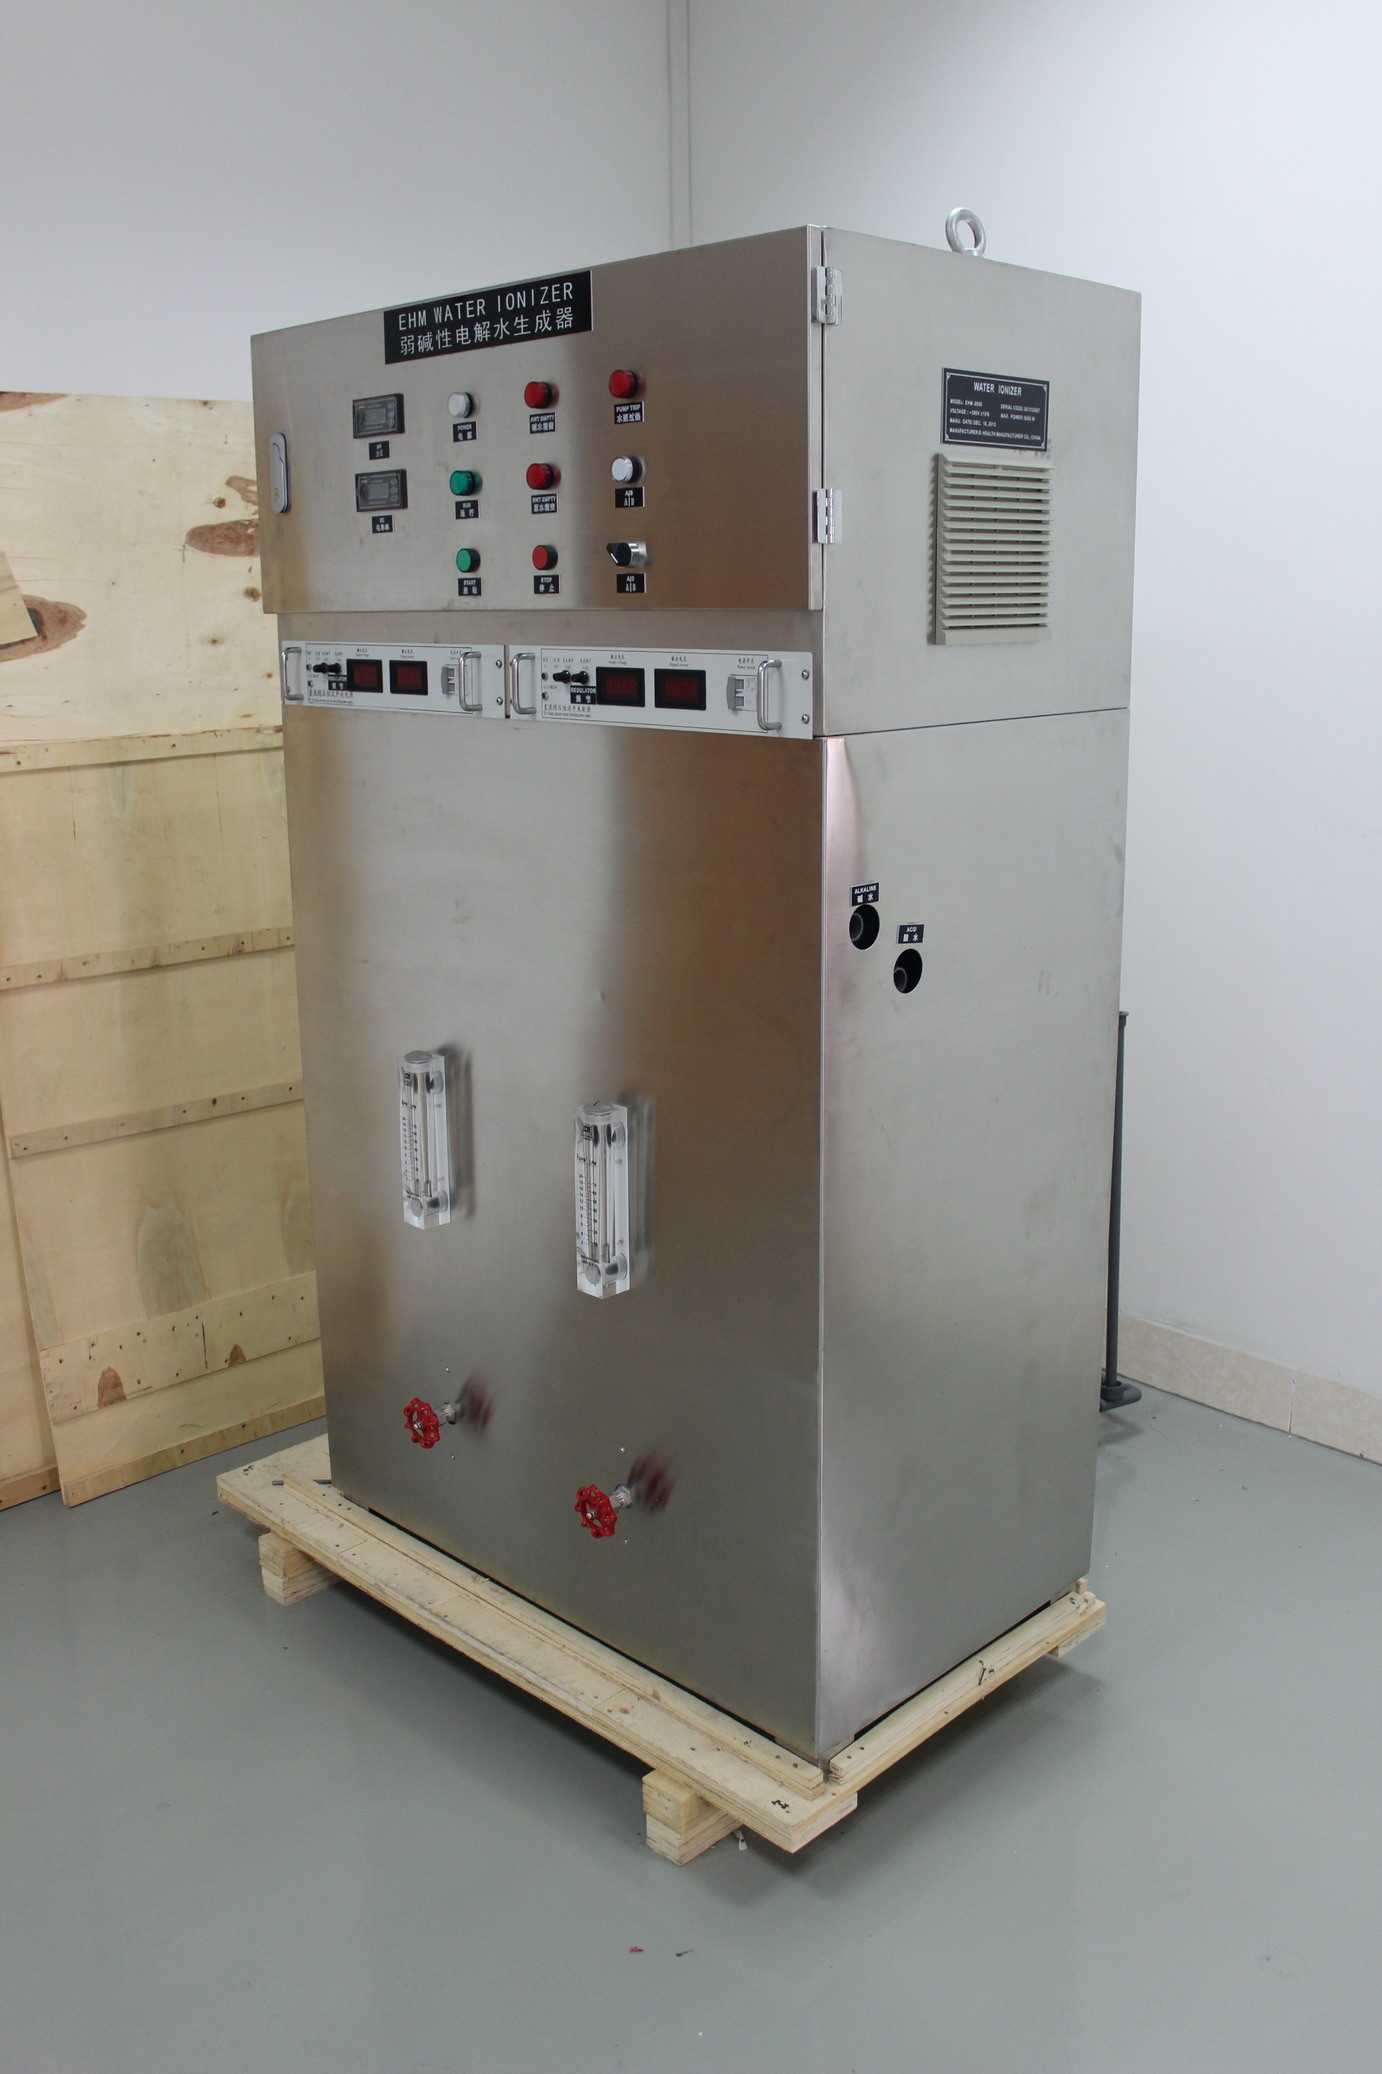 Νερό μεγάλης περιεκτικότητας ionizer που με το βιομηχανικό πρότυπο συστημάτων κατεργασίας ύδατος ehm-1000